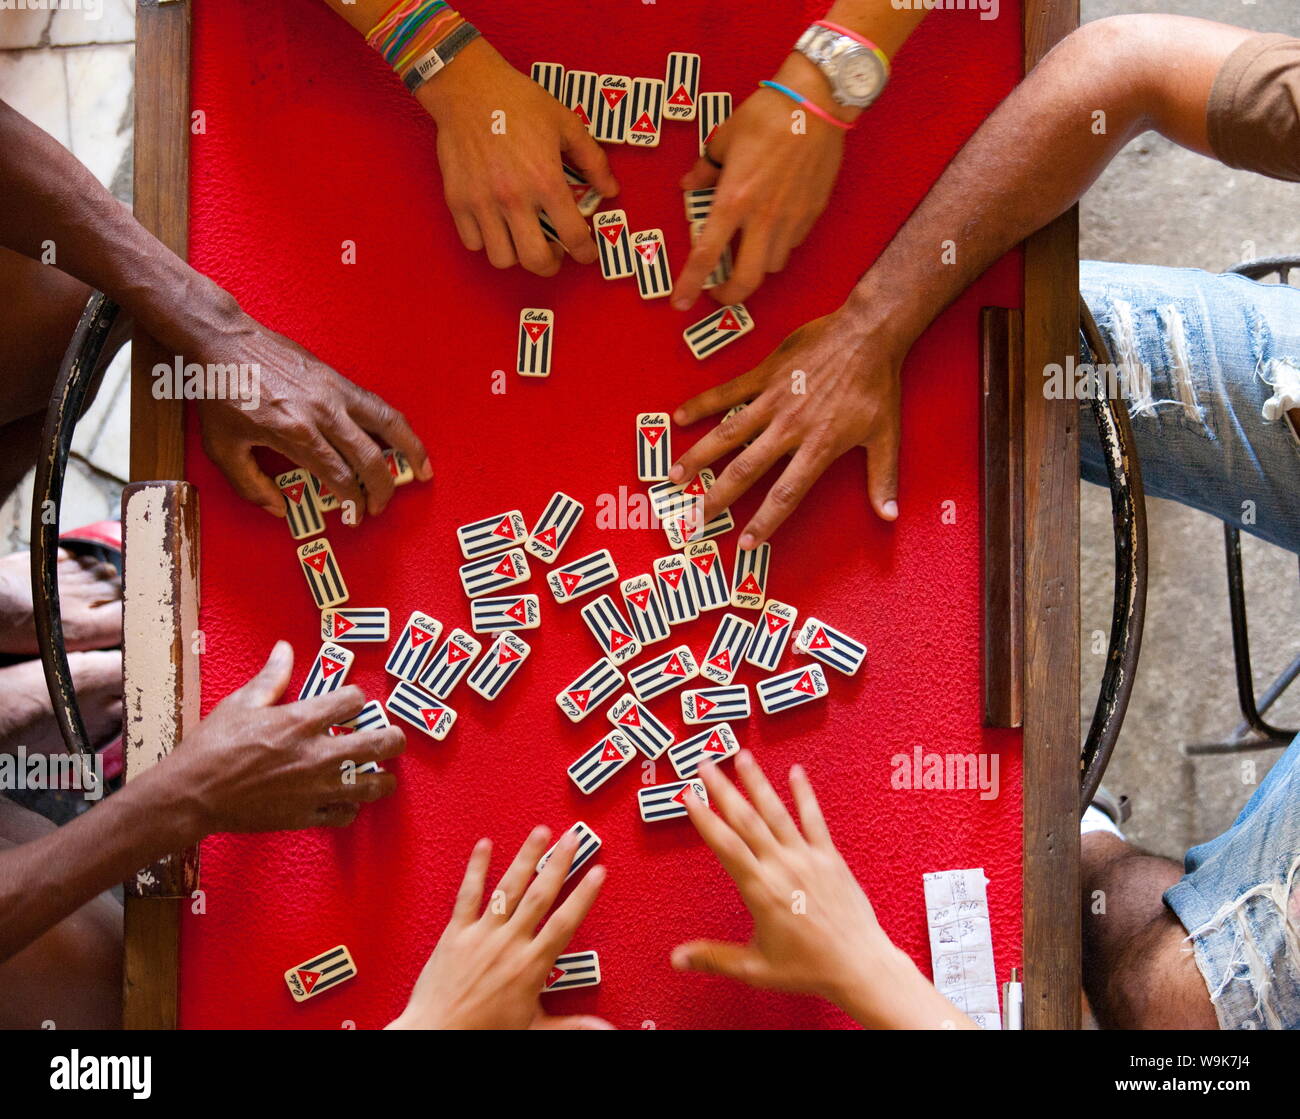 Vue de dessus de personnes jouant avec dominos marqués d'un nom de pays et le drapeau de Cuba, La Havane, Cuba, Antilles, Amérique Centrale Banque D'Images